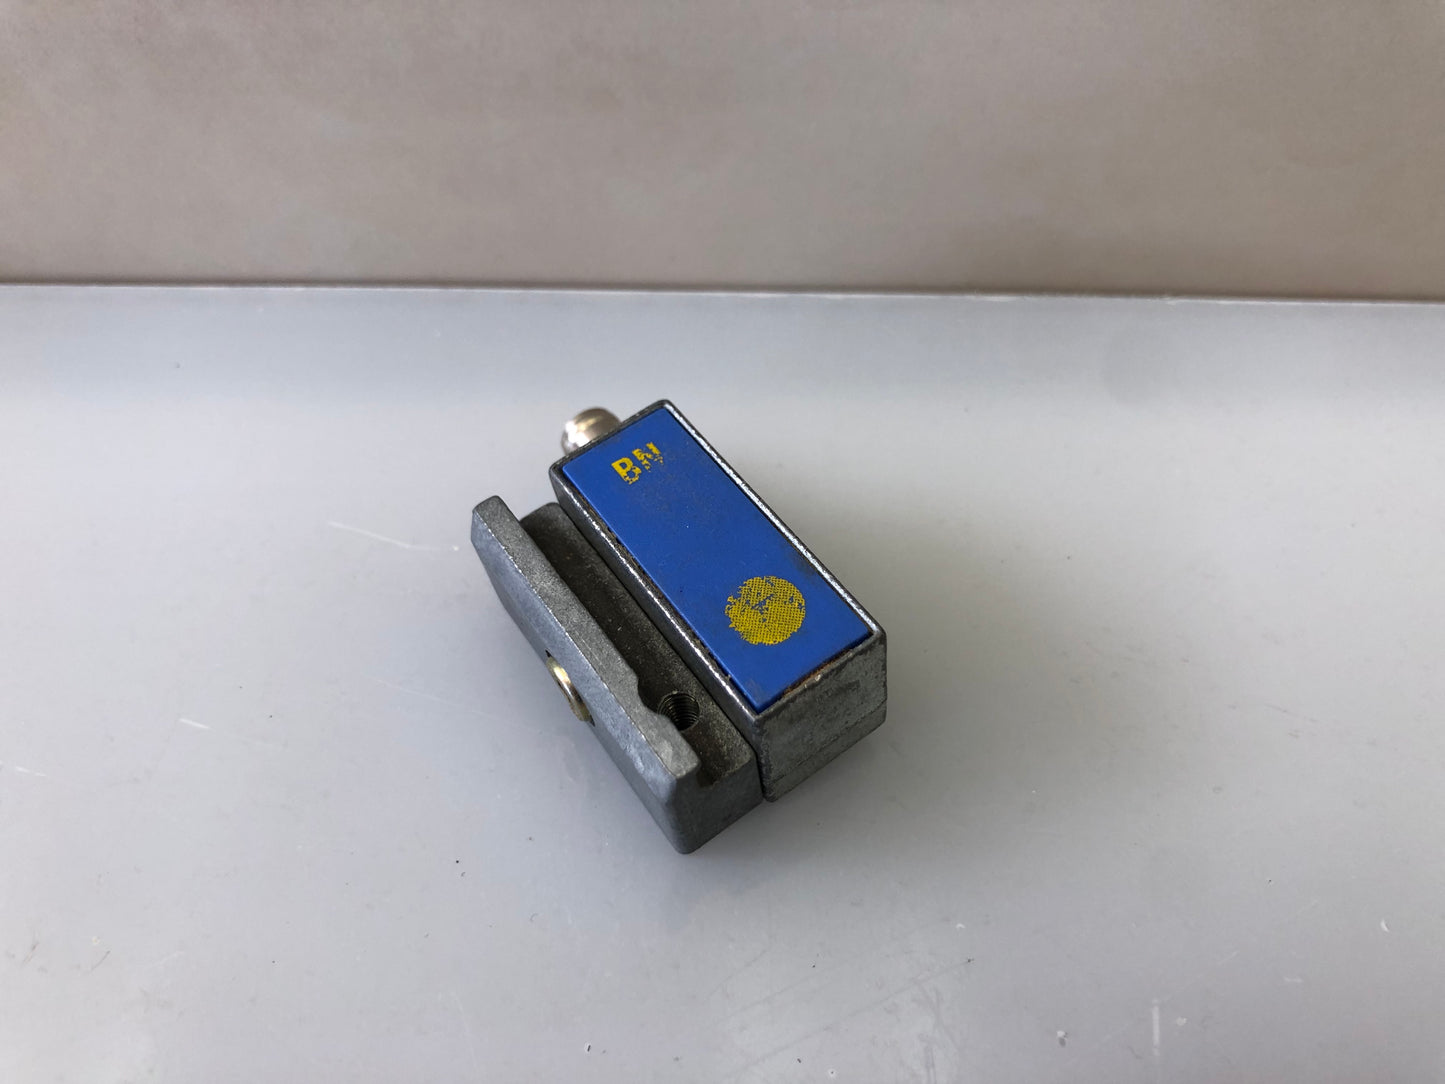 FESTO proximity sensor SMTO-1-PS-S-LED-24